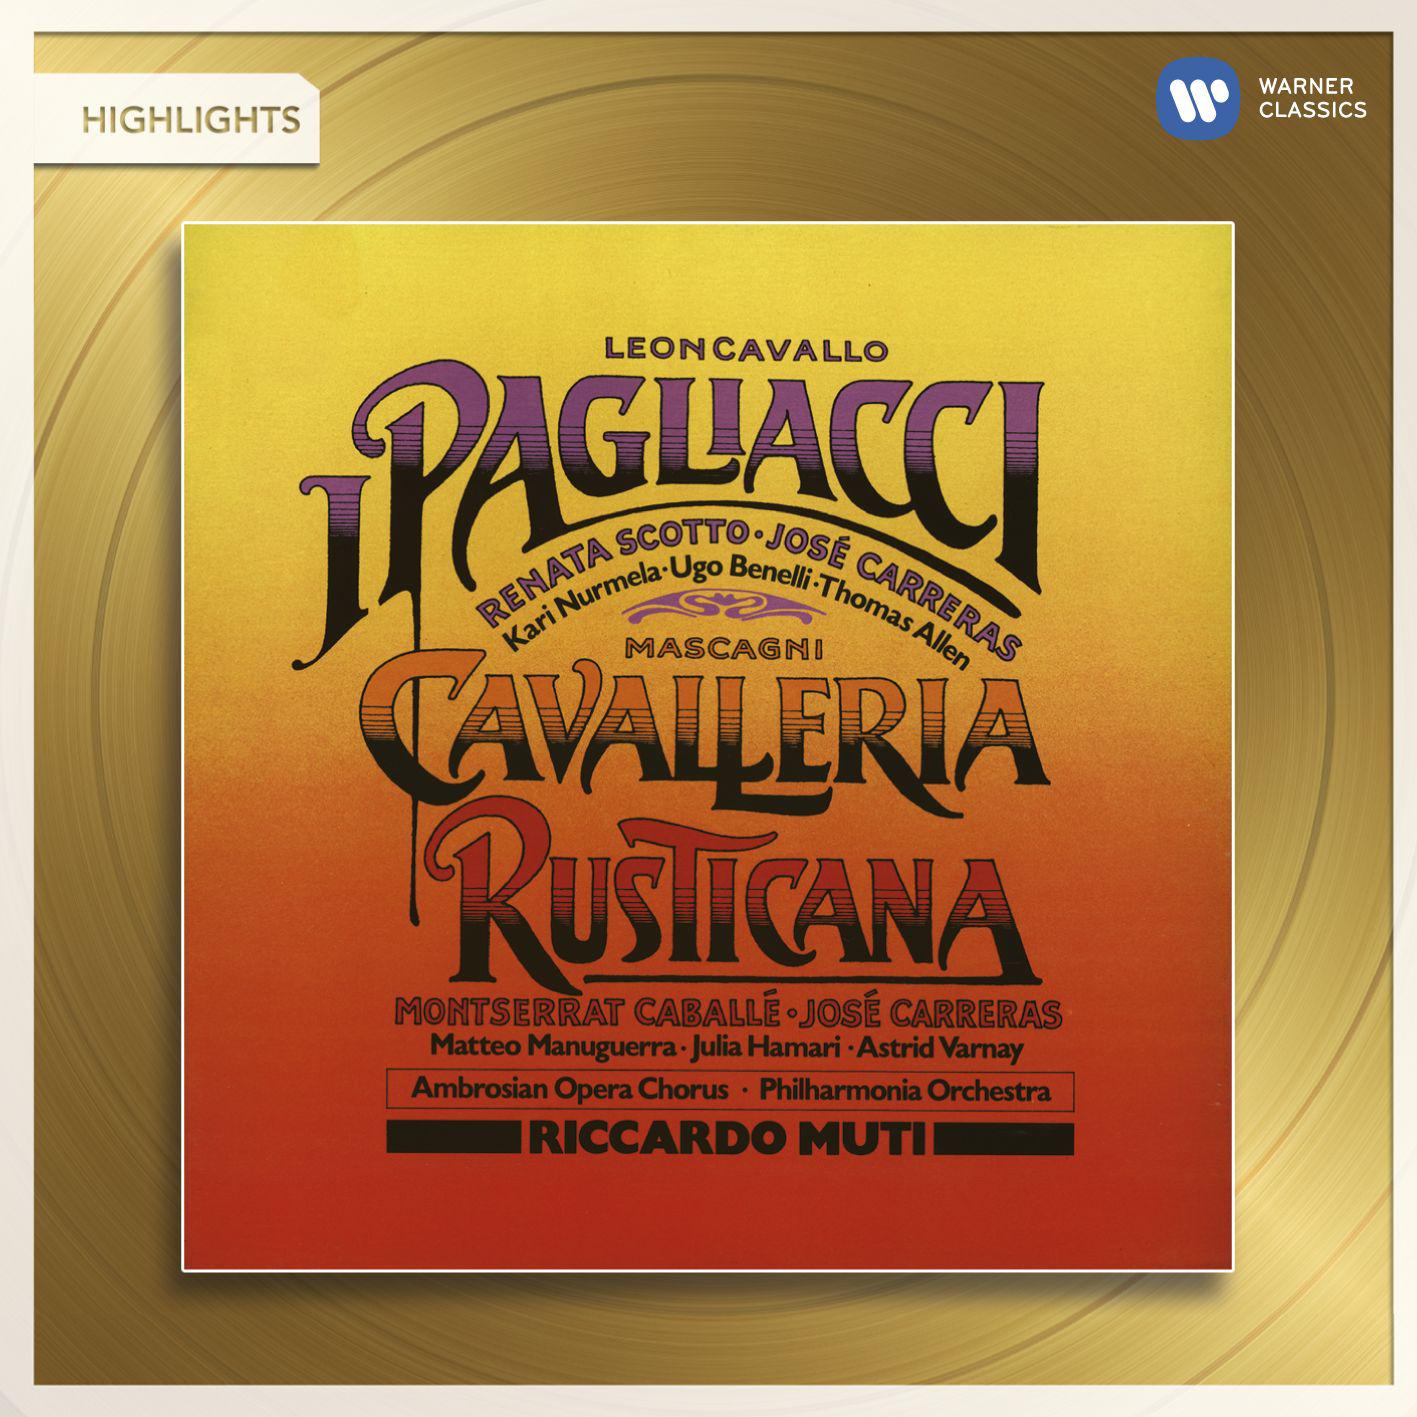 No, Pagliaccio non son ... Suvvia, cosi terrible Canio Coro Silvio Nedda Beppe Tonio from Pagliacci 1987 Remastered Version